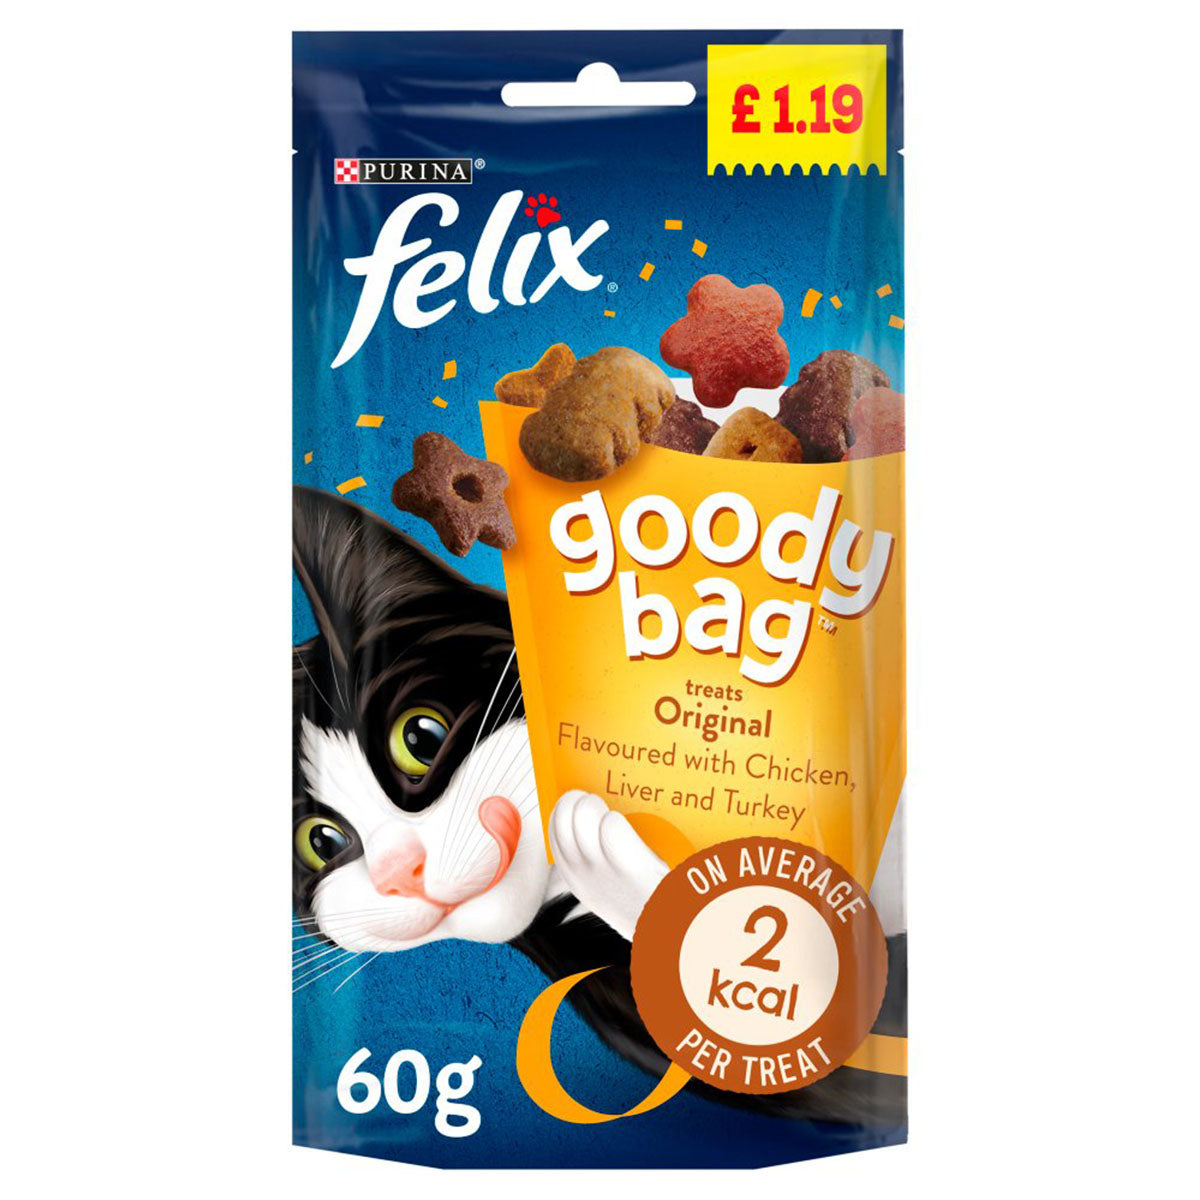 Felix - Goody Bag Cat Treats Original - 60g - Continental Food Store